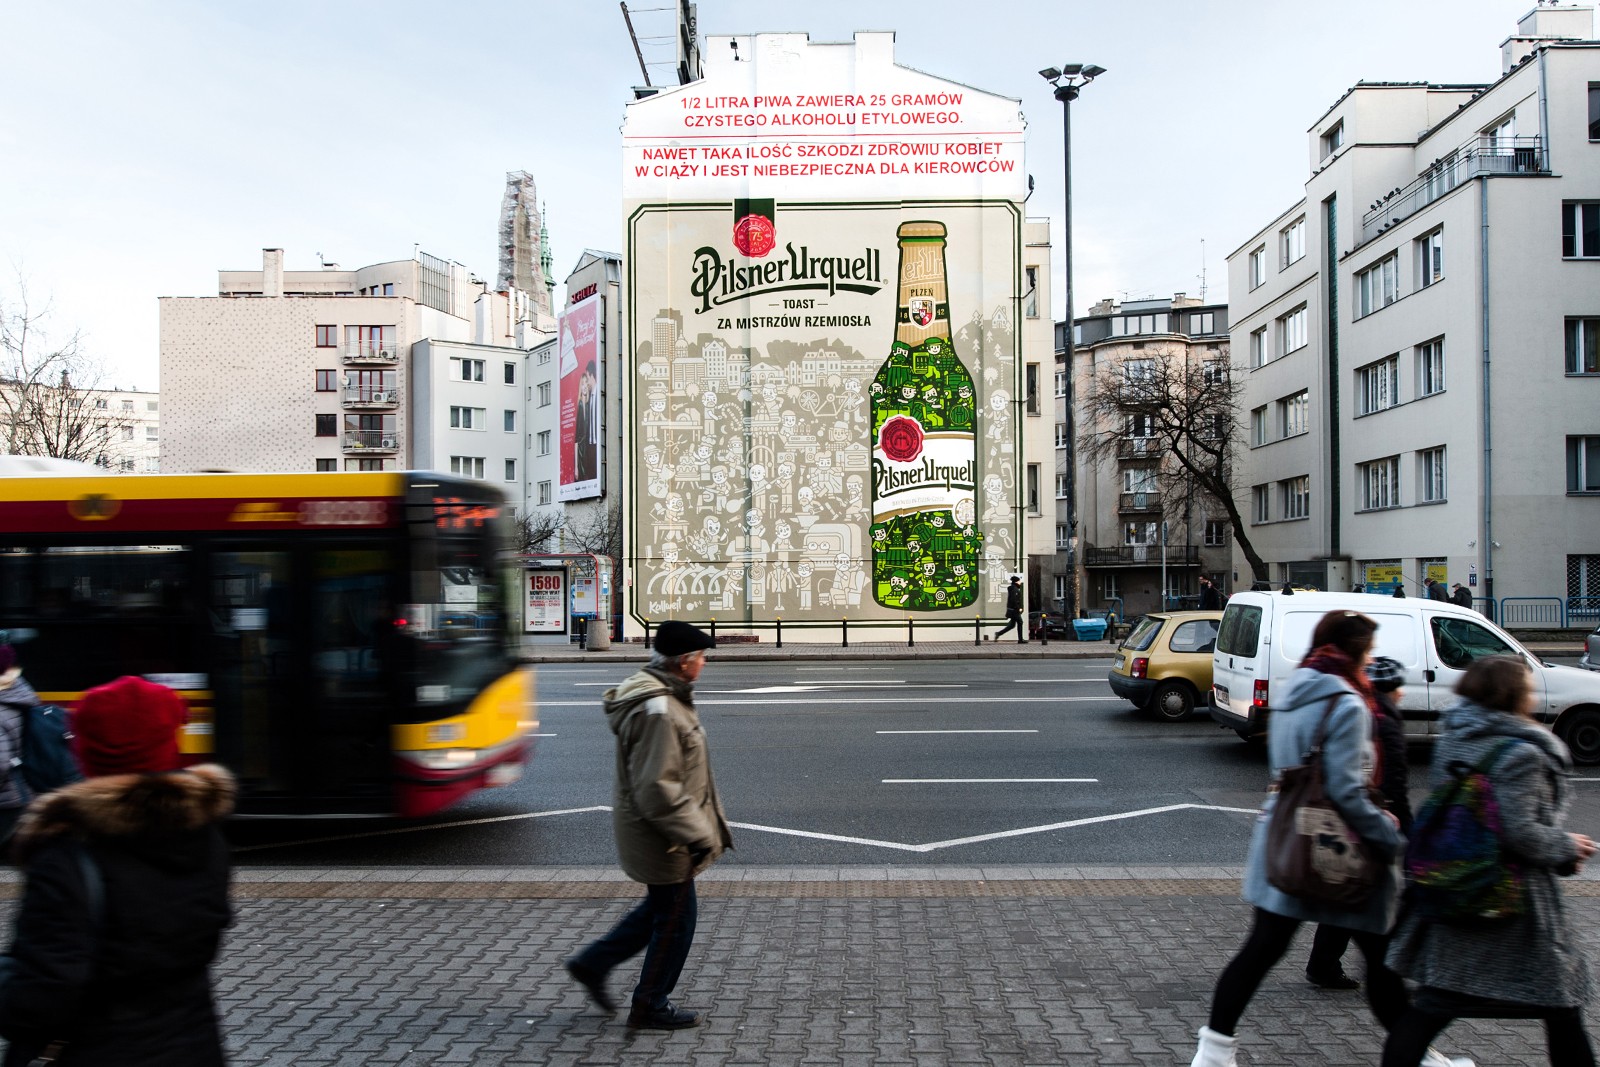 Reklama piwa Pilsner Urquell w Warszawie przy metrze Politechnika na ulicy Jaworzyńskiej | Pilsner Urquell | Portfolio